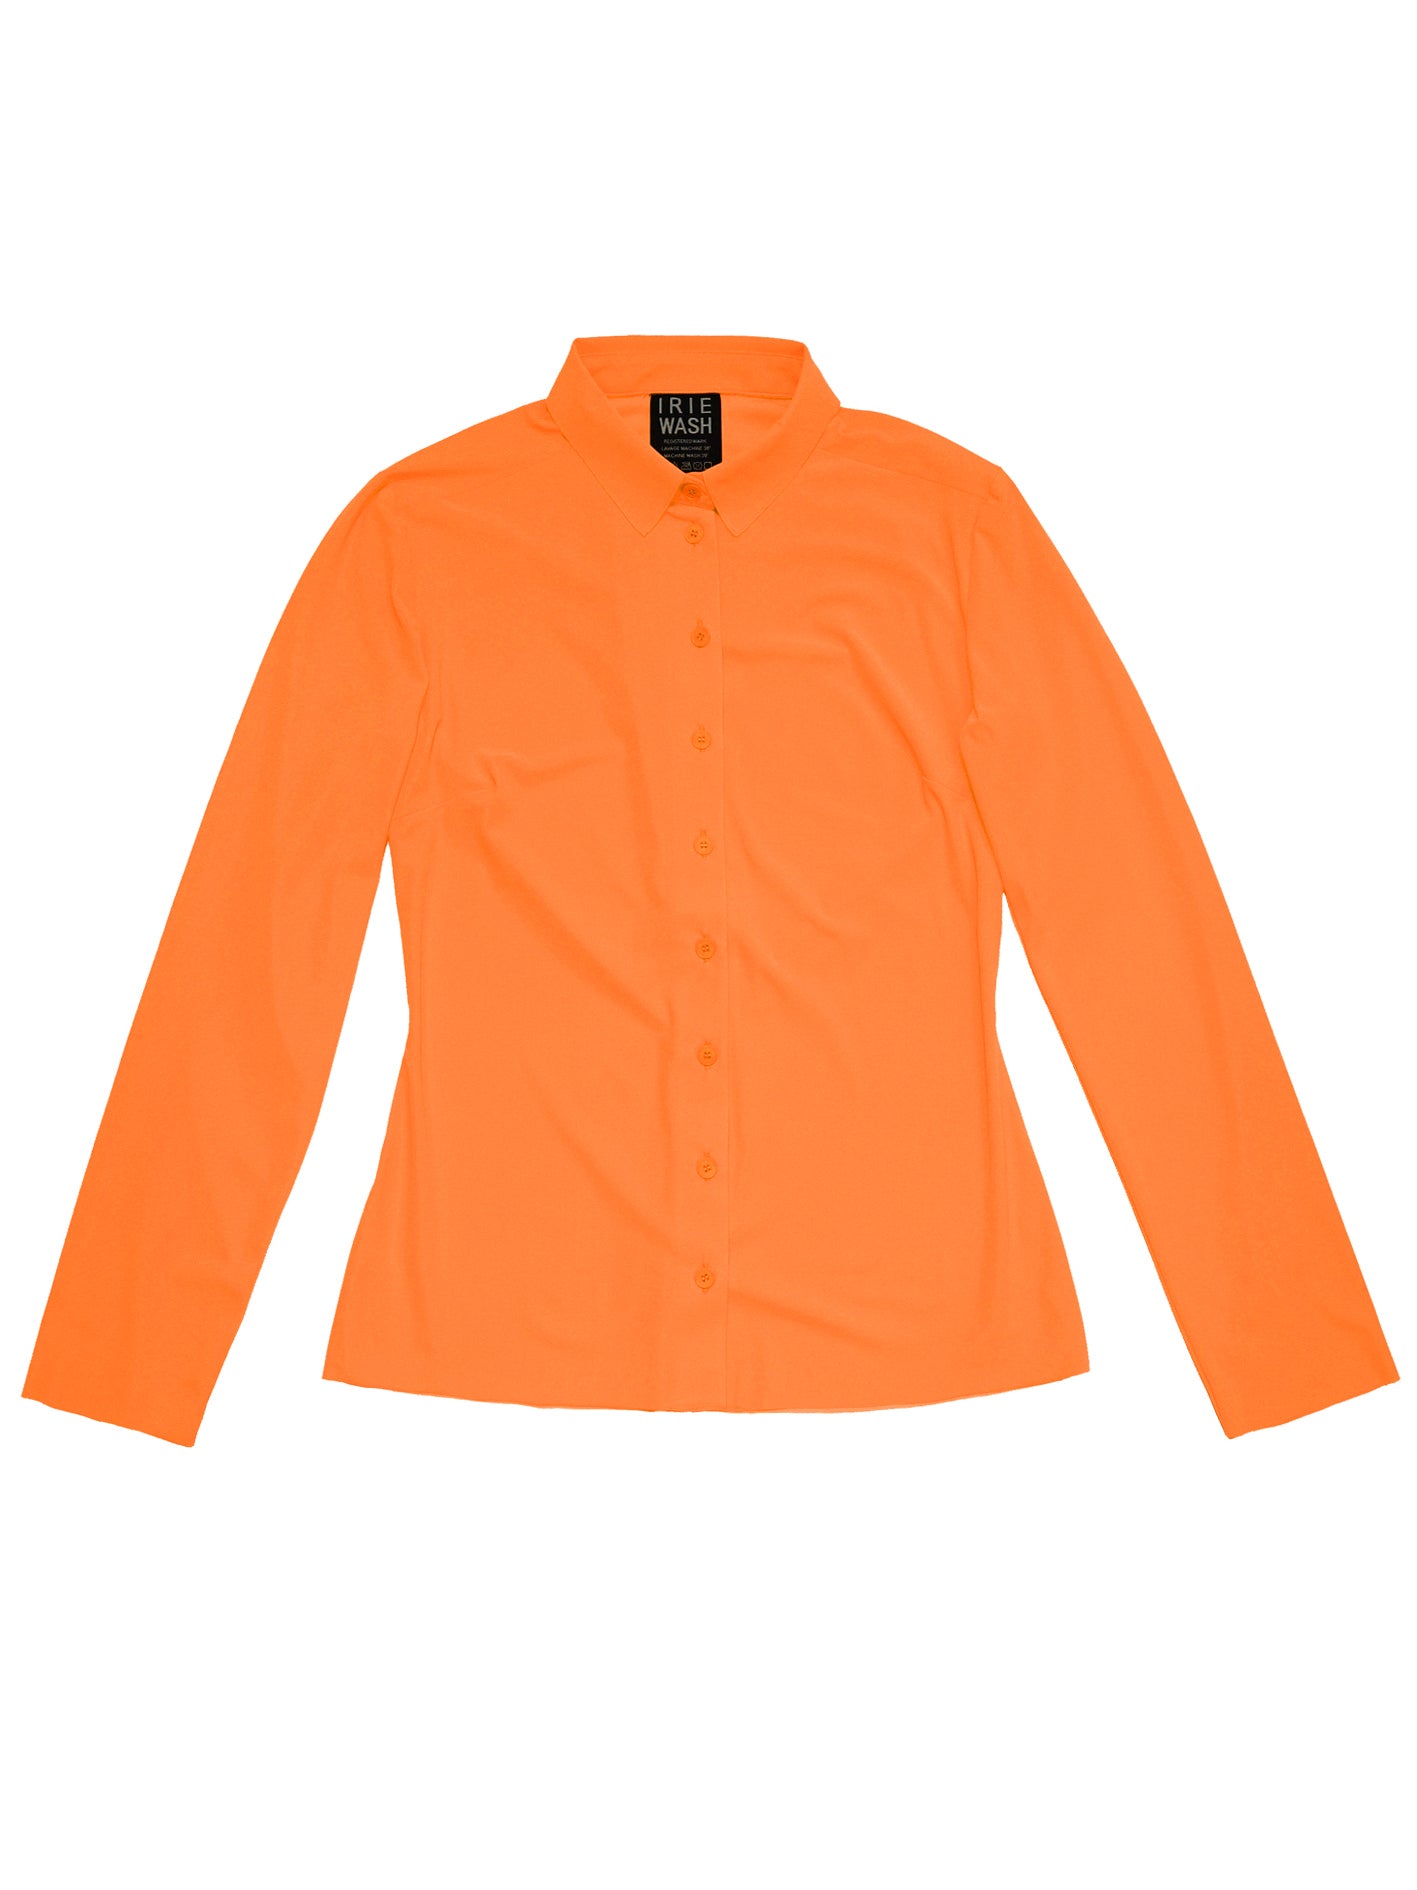 CLASSIC SHIRT, Neon Orange